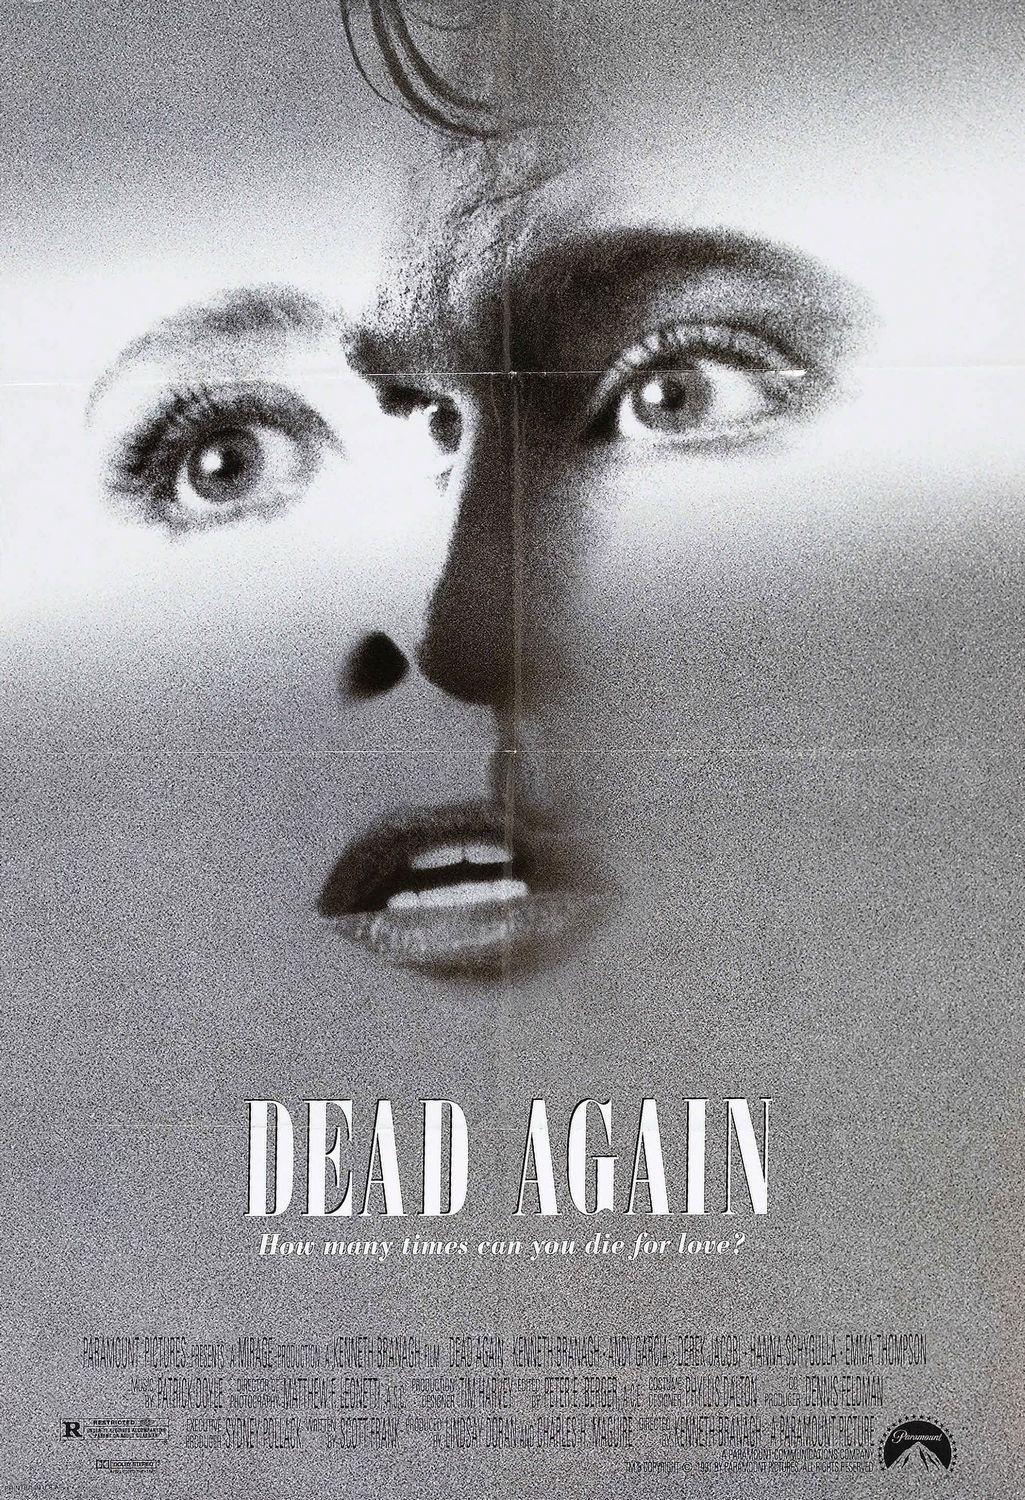 Dead_Again_1991_Poster.jpeg